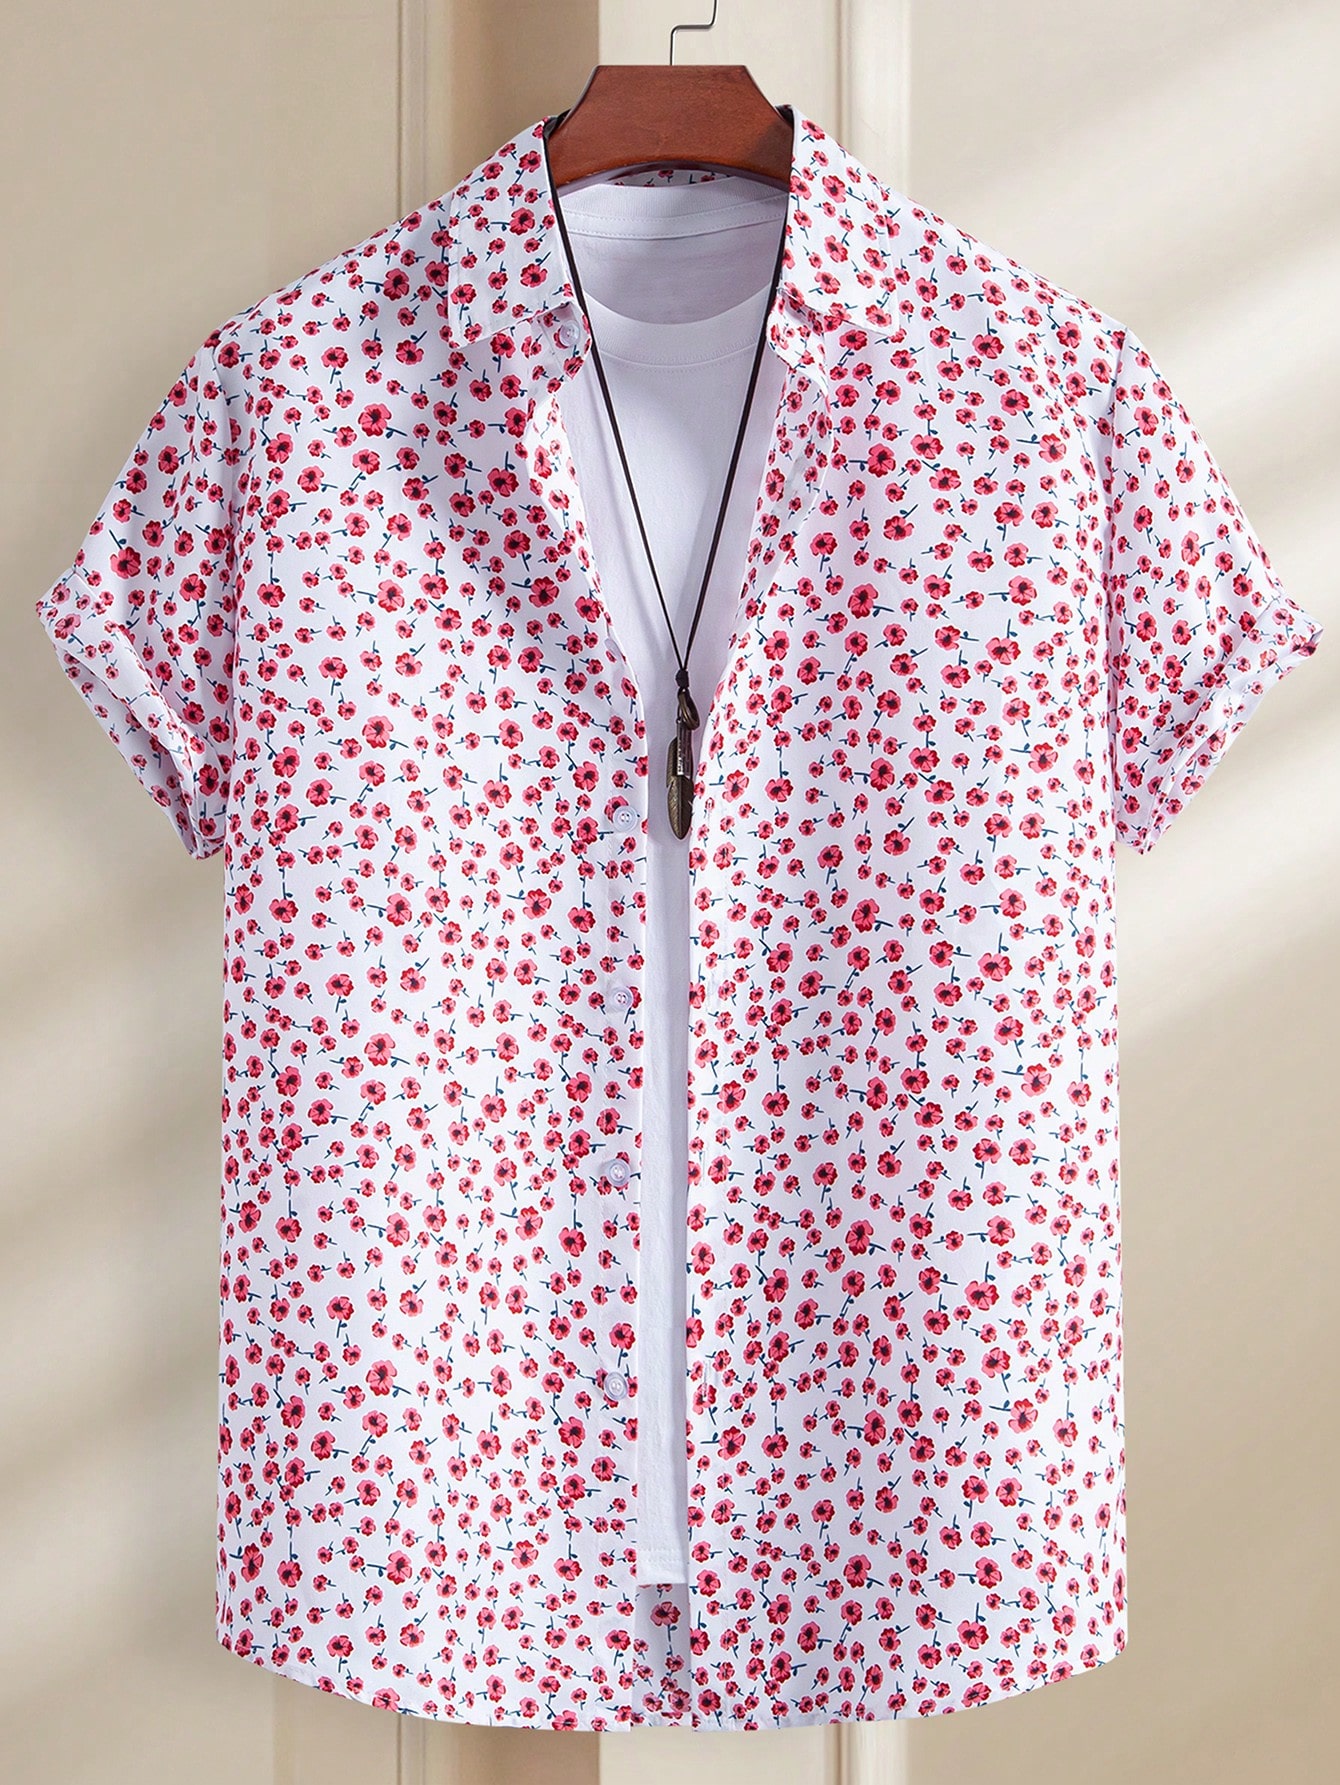 Мужская рубашка с коротким рукавом Manfinity Chillmode с цветочным принтом, красный мужская рубашка с цветочным 3d принтом и длинным рукавом